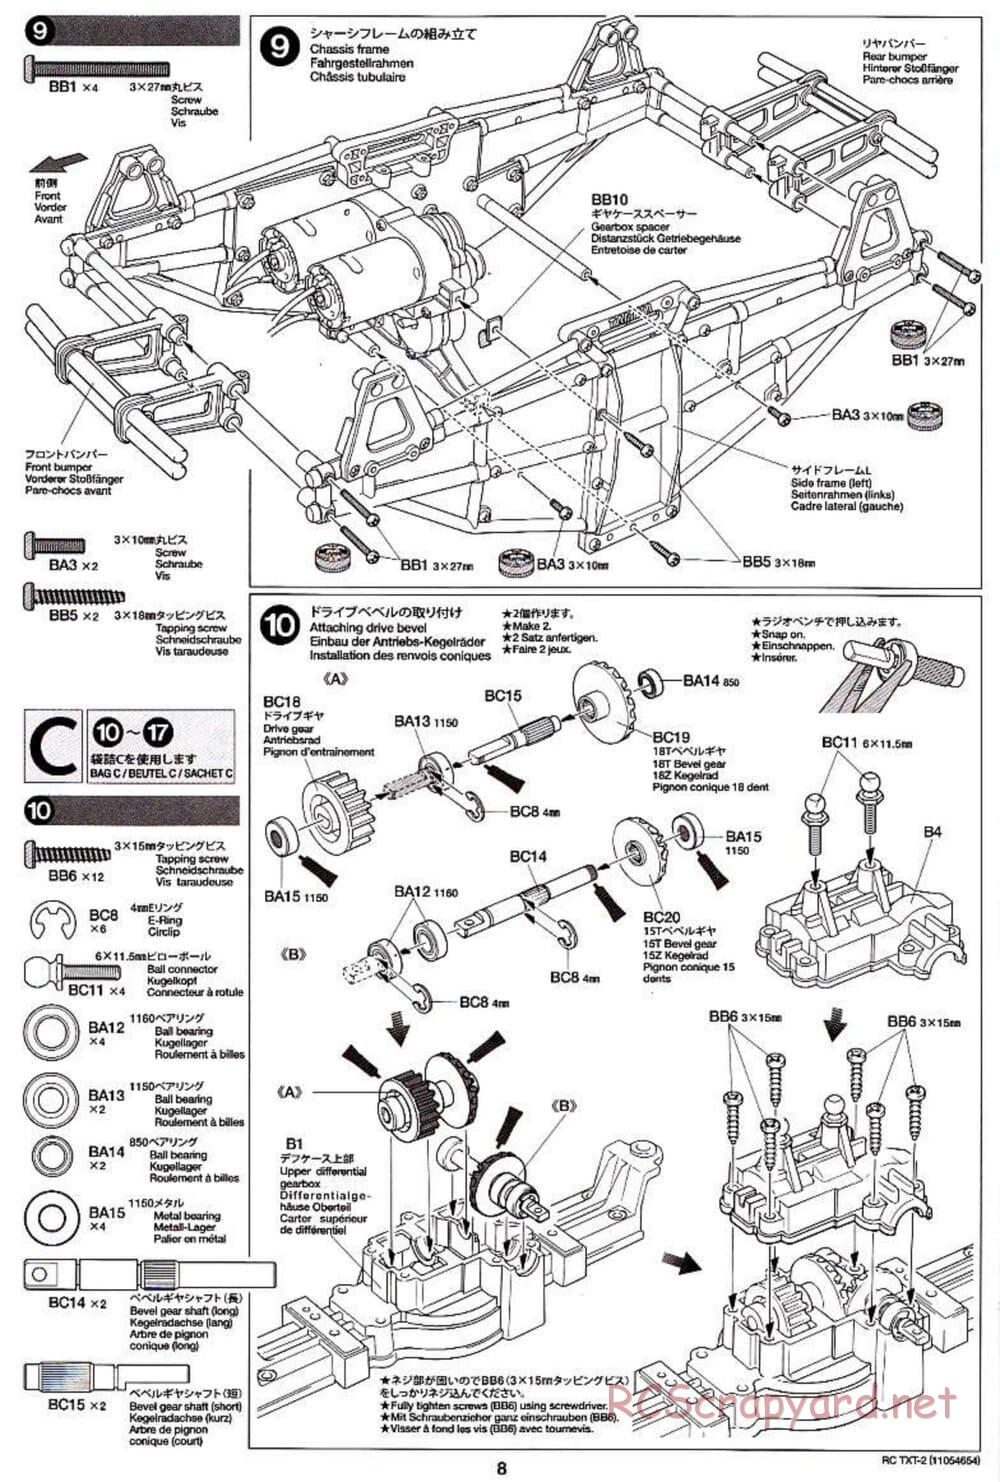 Tamiya - TXT-2 Chassis - Manual - Page 8